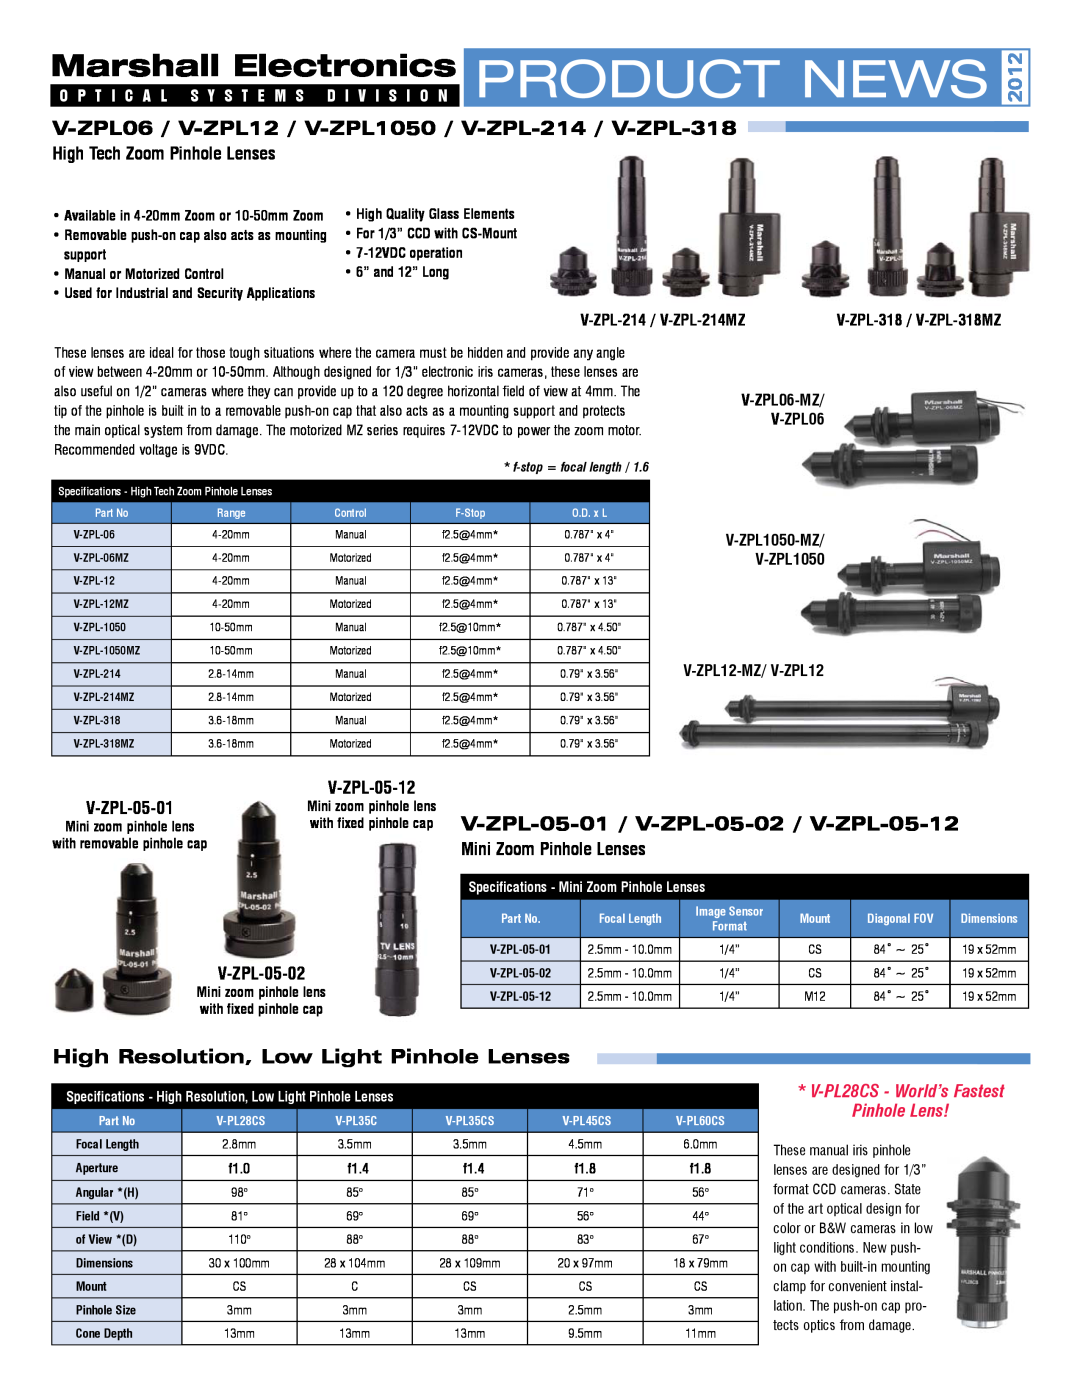 Marshall electronic specifications V-ZPL06 / V-ZPL12 / V-ZPL1050 / V-ZPL-214 / V-ZPL-318, High Tech Zoom Pinhole Lenses 